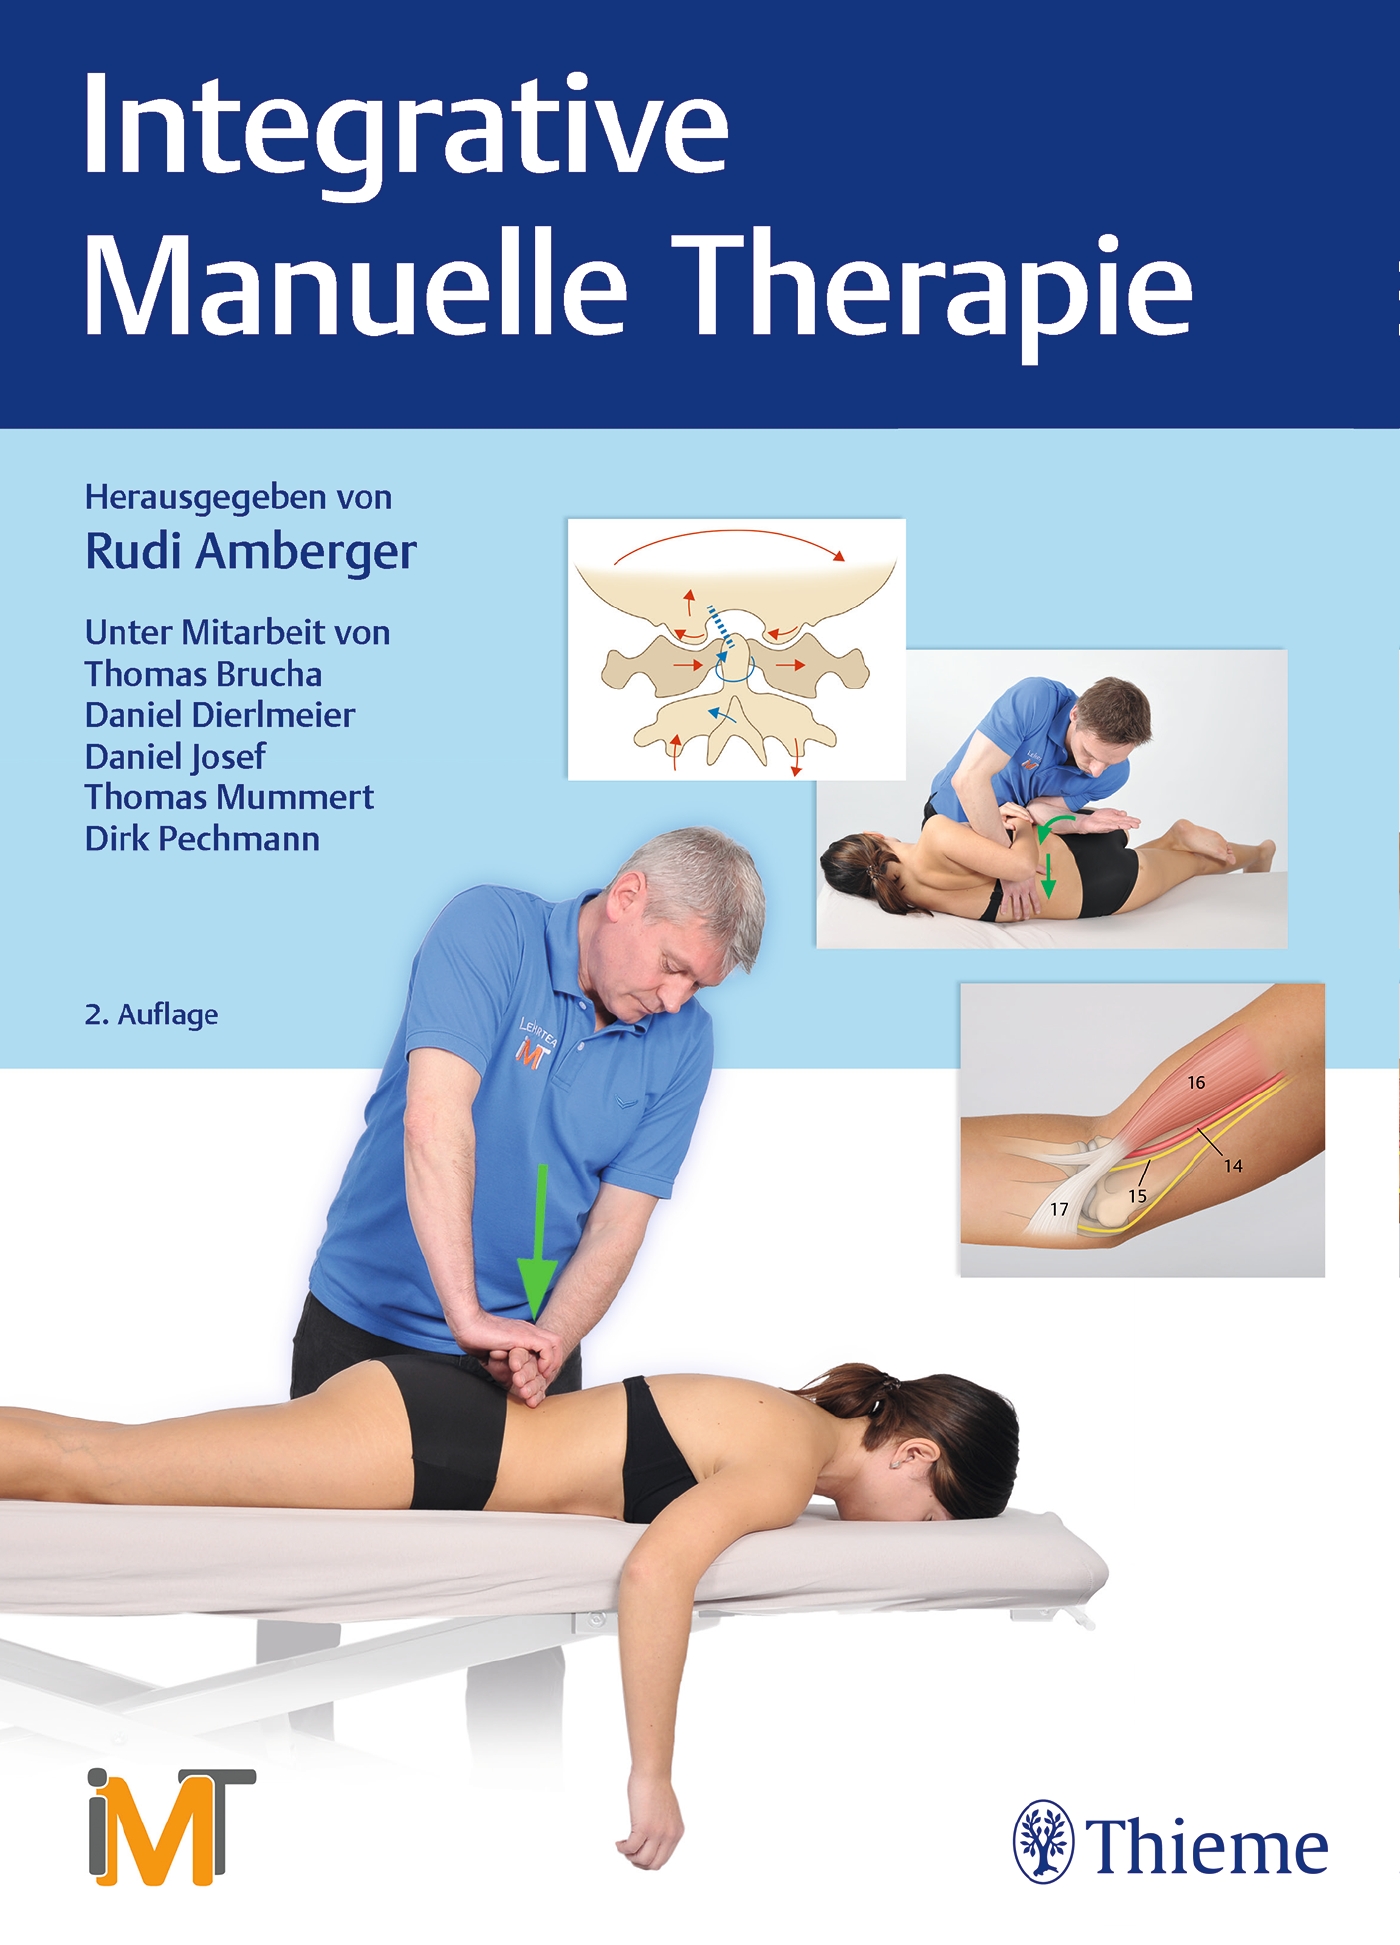 Rudi Amberger / Integrative Manuelle Therapie - Bild 1 von 1